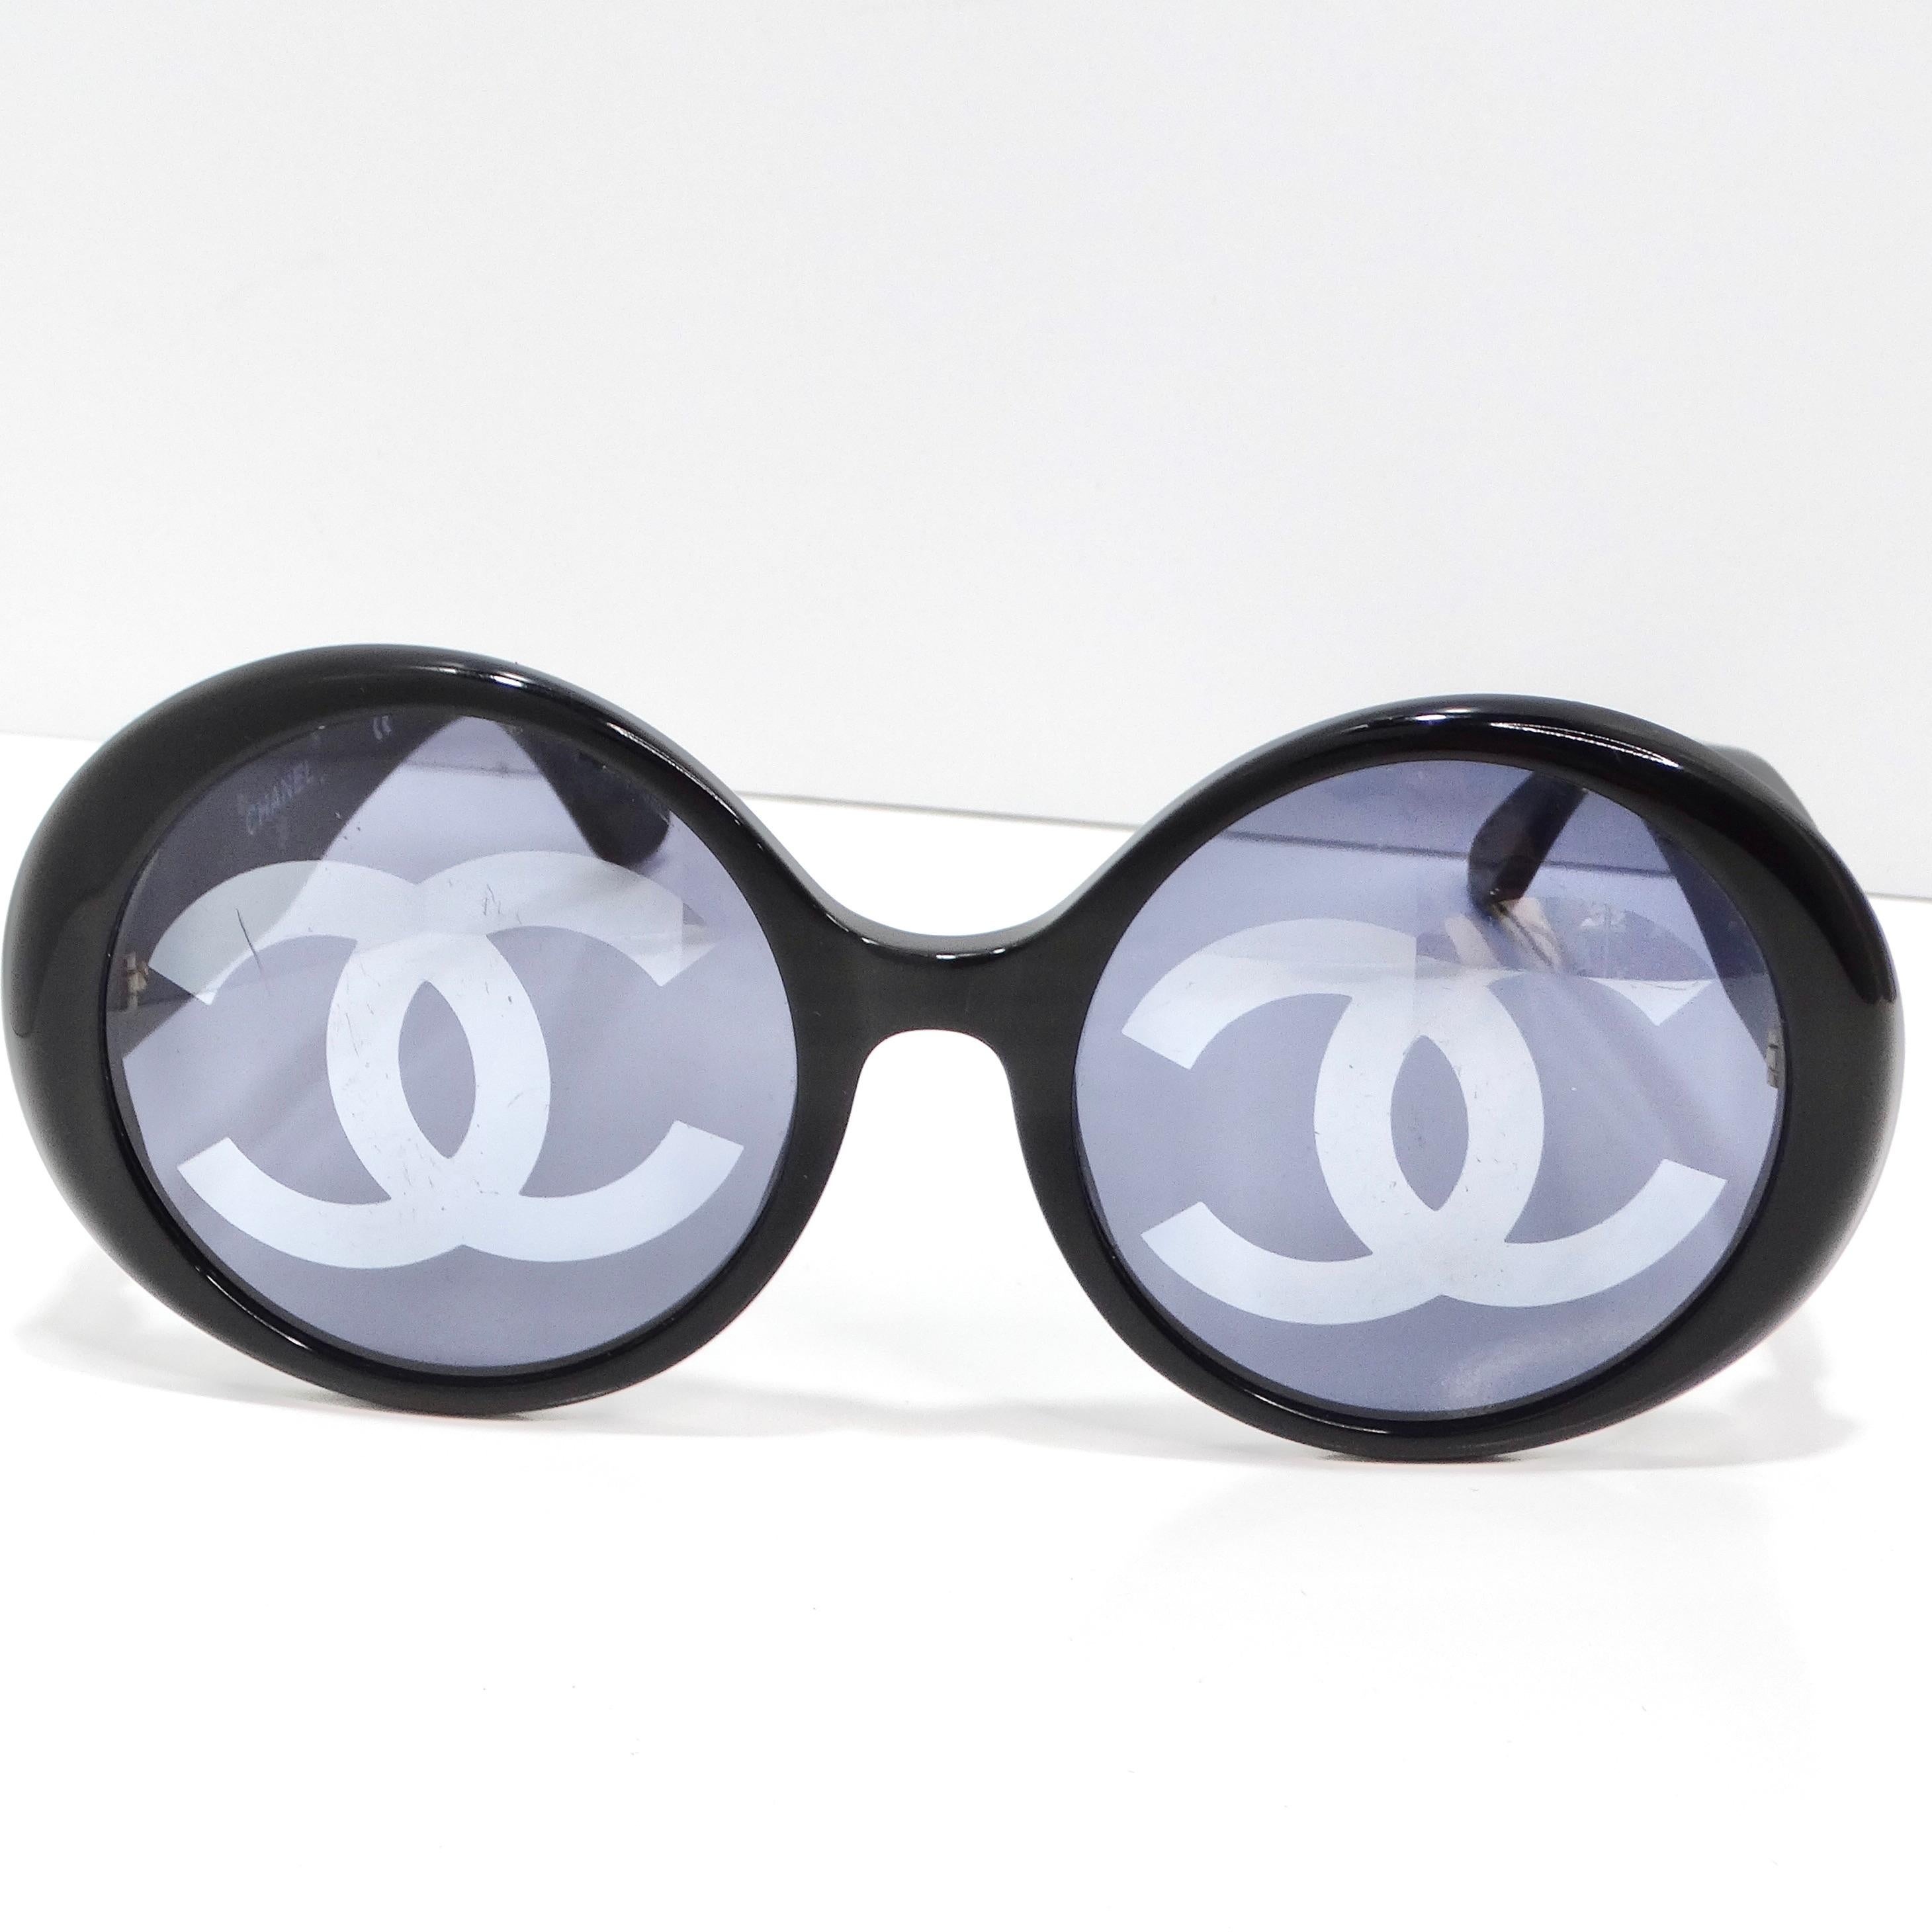 Offrez-vous un morceau d'histoire de la mode avec les lunettes de soleil Chanel 1993 Black CC Logo Round Lens, une pièce rare et convoitée issue du défilé emblématique de Chanel en 1993. Ces lunettes de soleil à couper le souffle sont dotées de